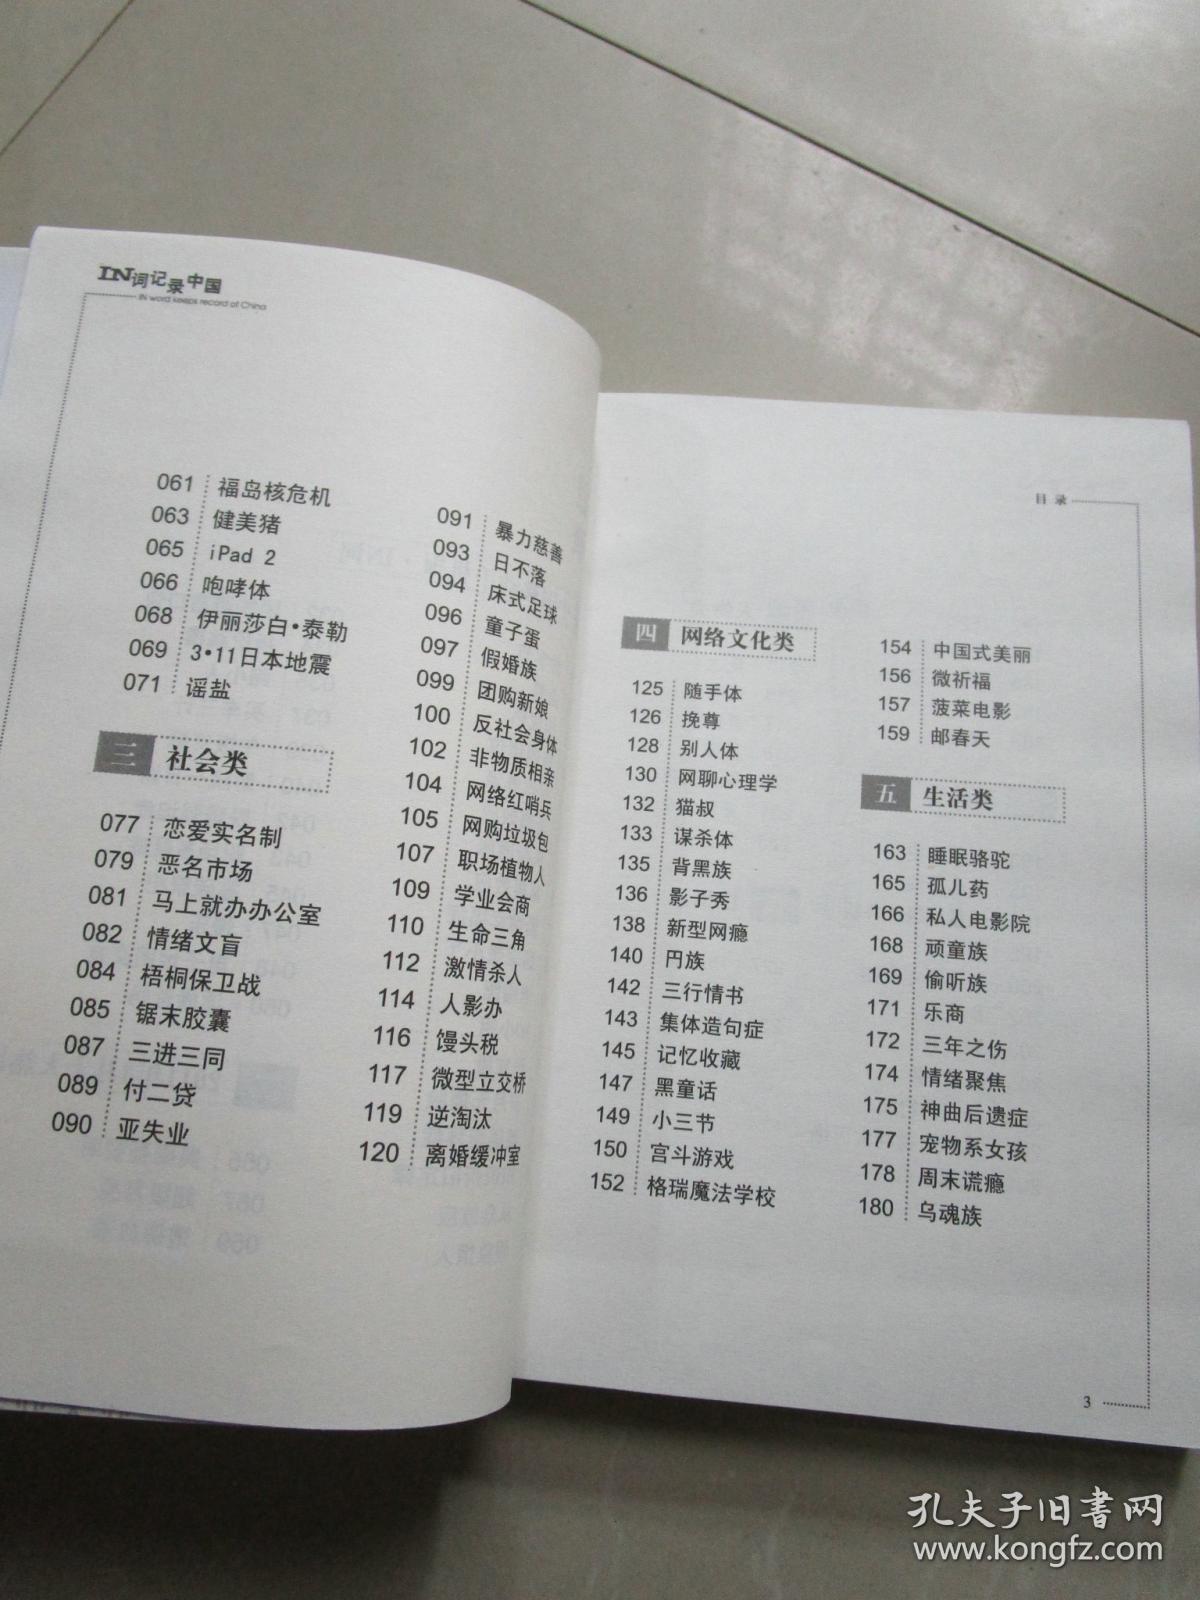 IN词记录中国1101（汉语-社会习惯语）